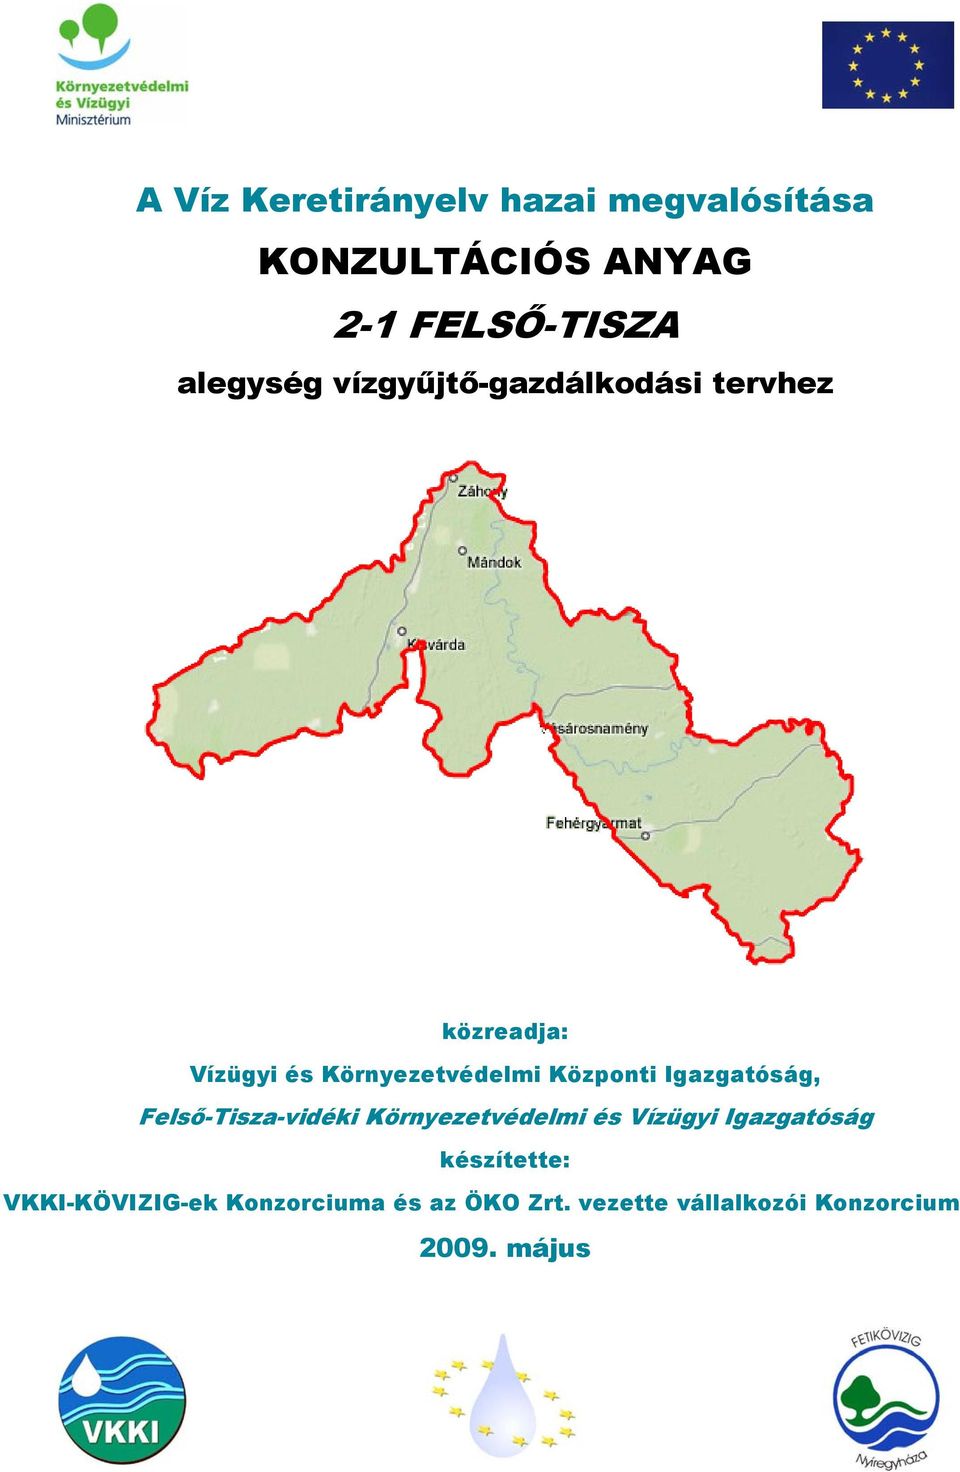 Központi Igazgatóság, Felső-Tisza-vidéki Környezetvédelmi és Vízügyi Igazgatóság